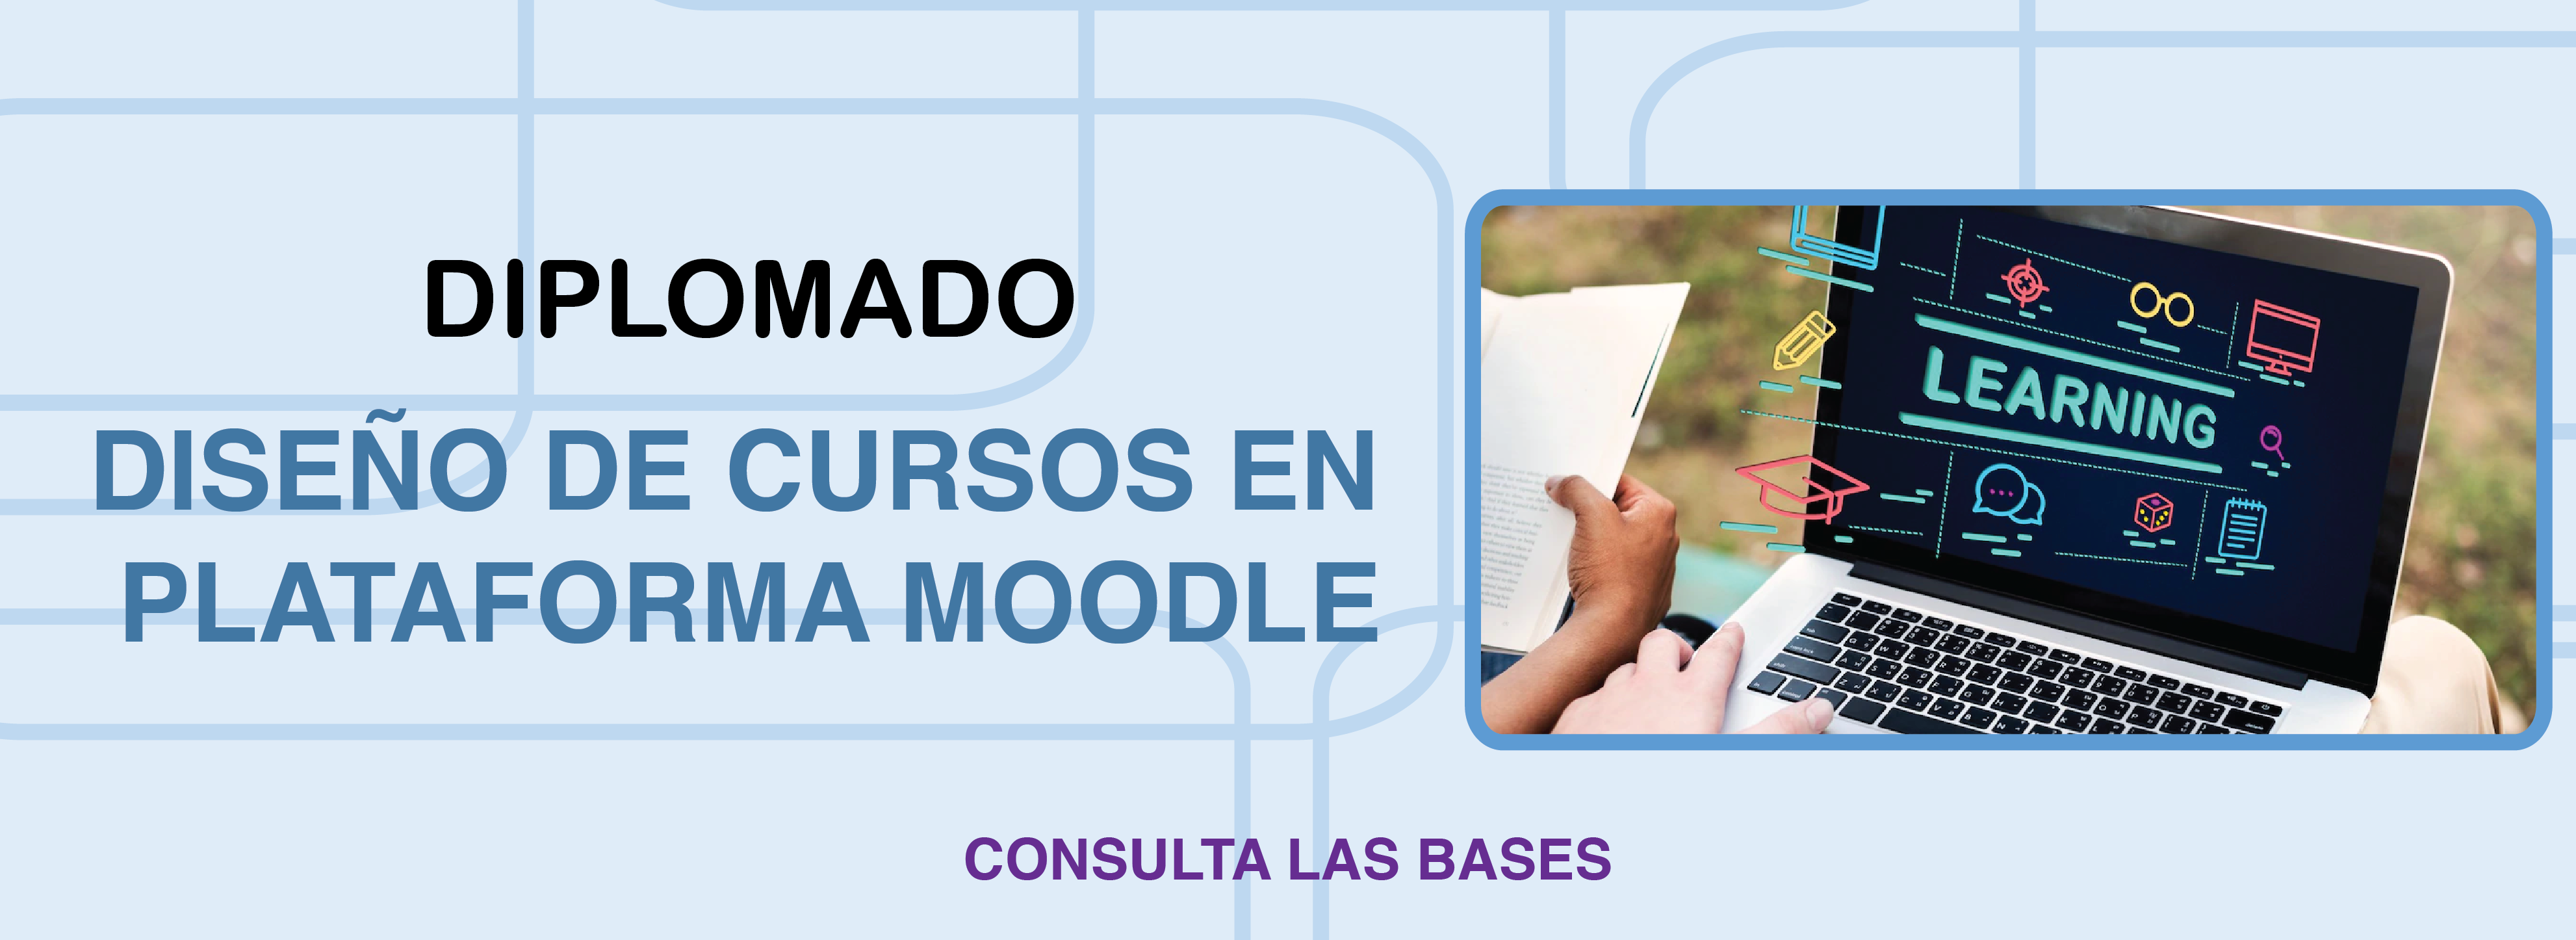 Diplomado_Diseno_de_cursos_en_plataforma_Moodle_banner_web